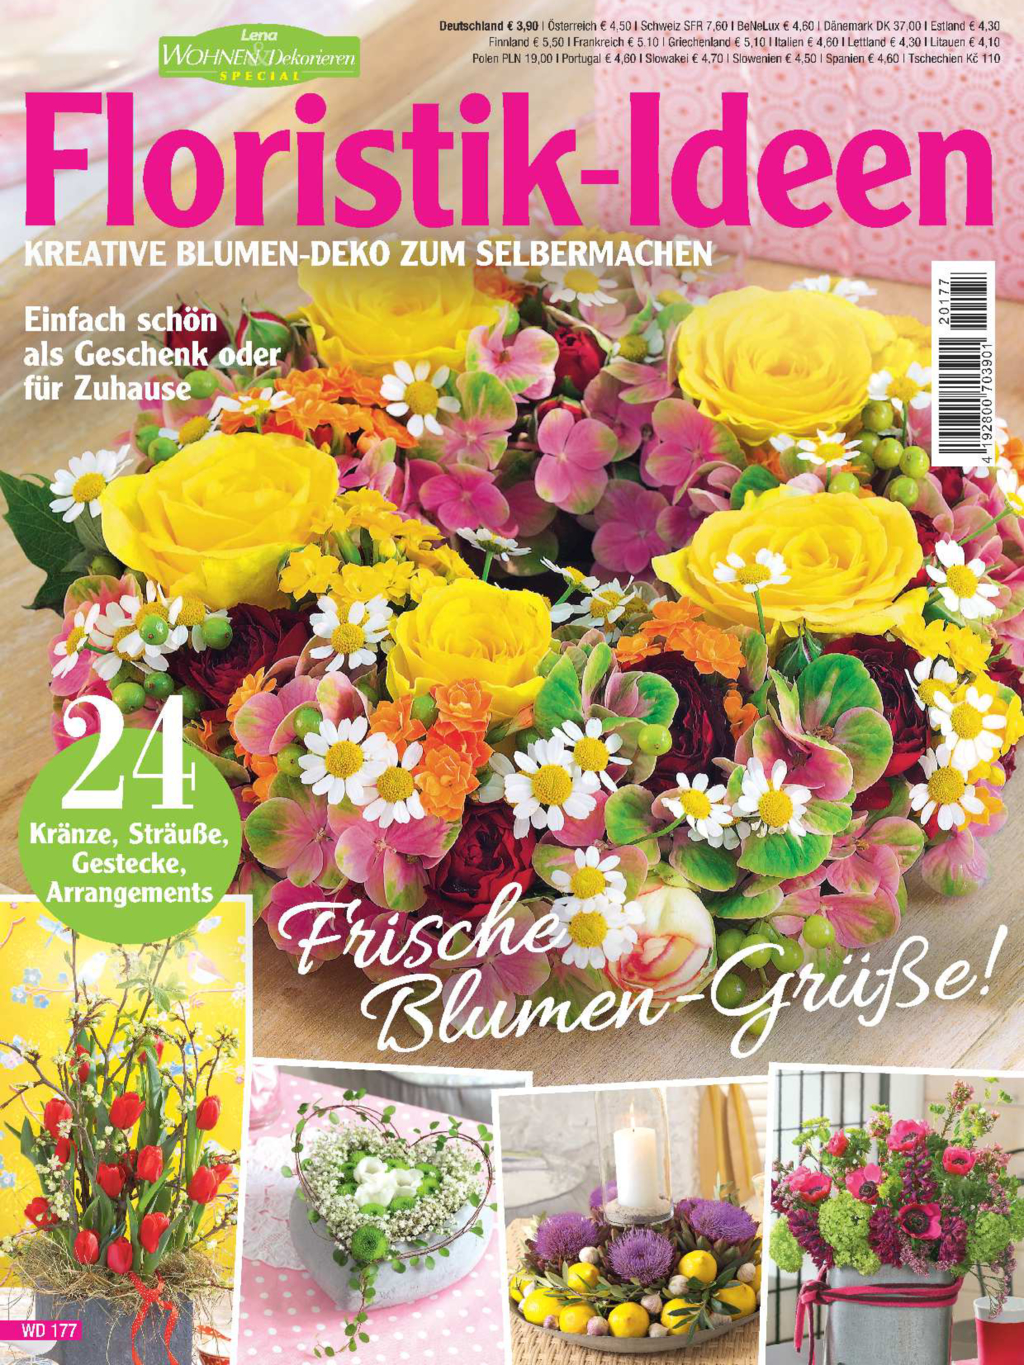 E-Paper: Lena Wohnen & Dekorieren special WD177 - Frische Blumen-Grüße!